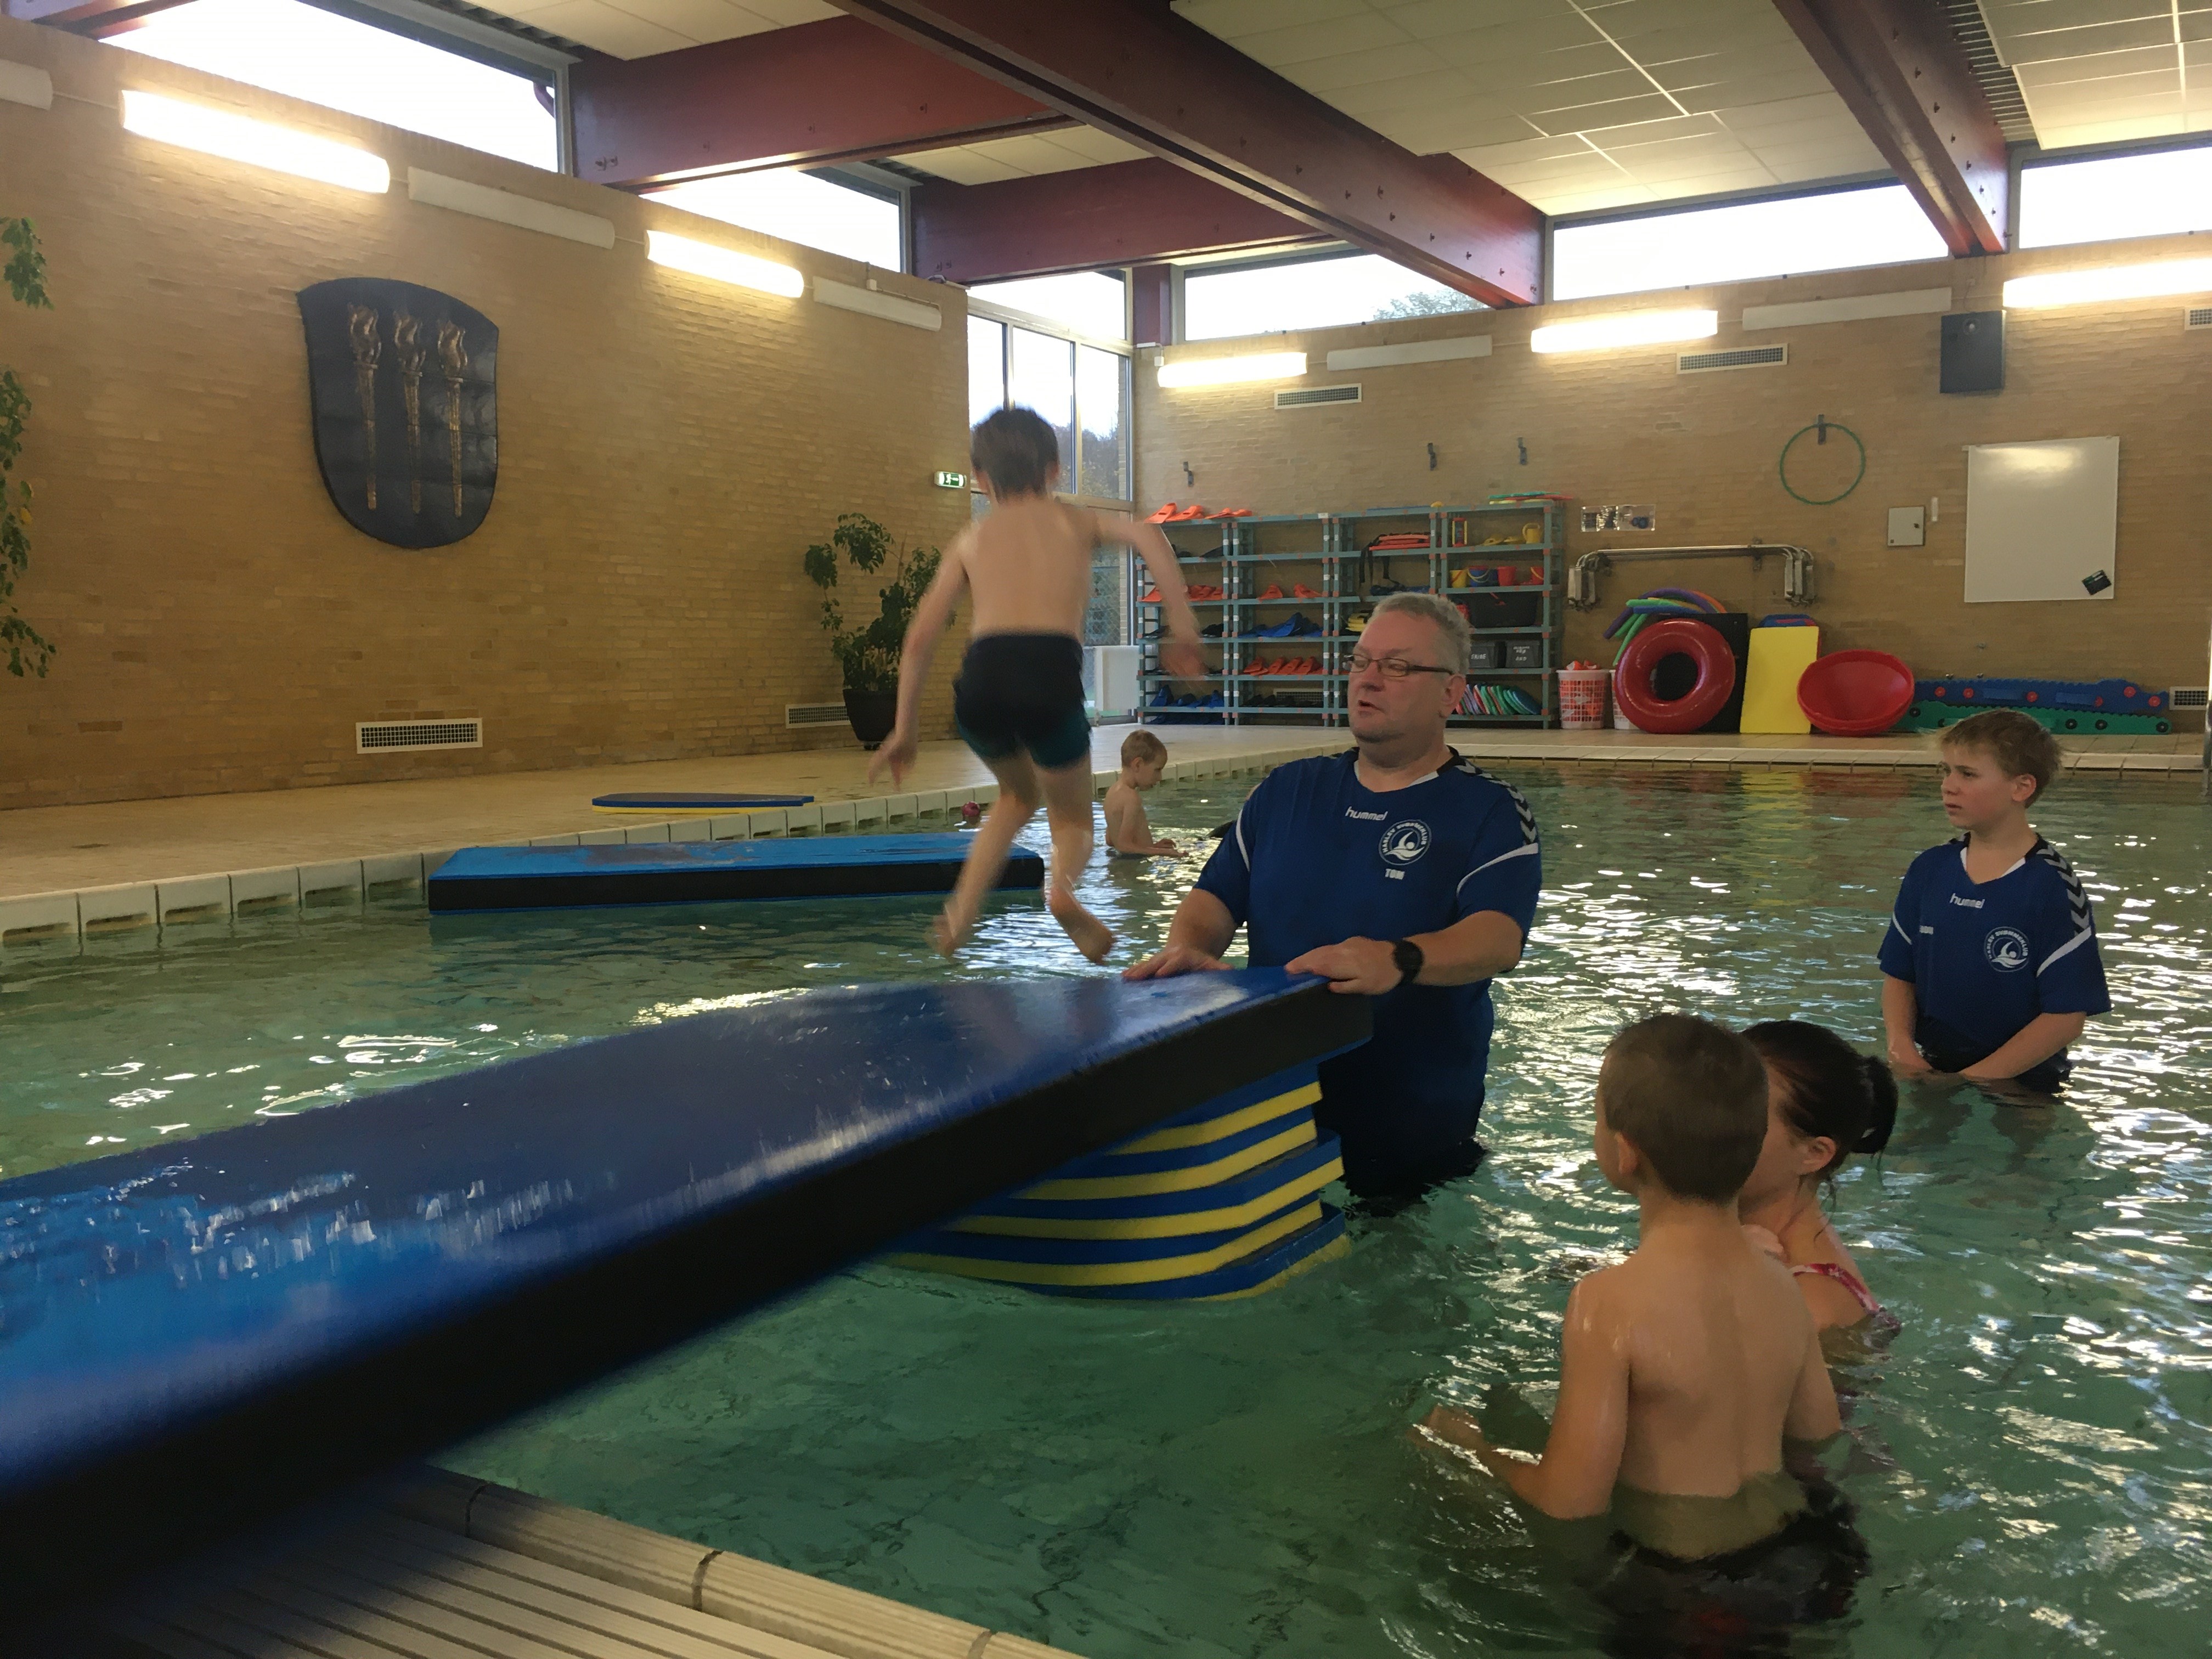 Tom Christensen havde ingen erfaring med at svømmetræne udfordrede børn, men har udviklet træningen på baggrund af sine erfaringer sammen med Jacob og hans forældre.